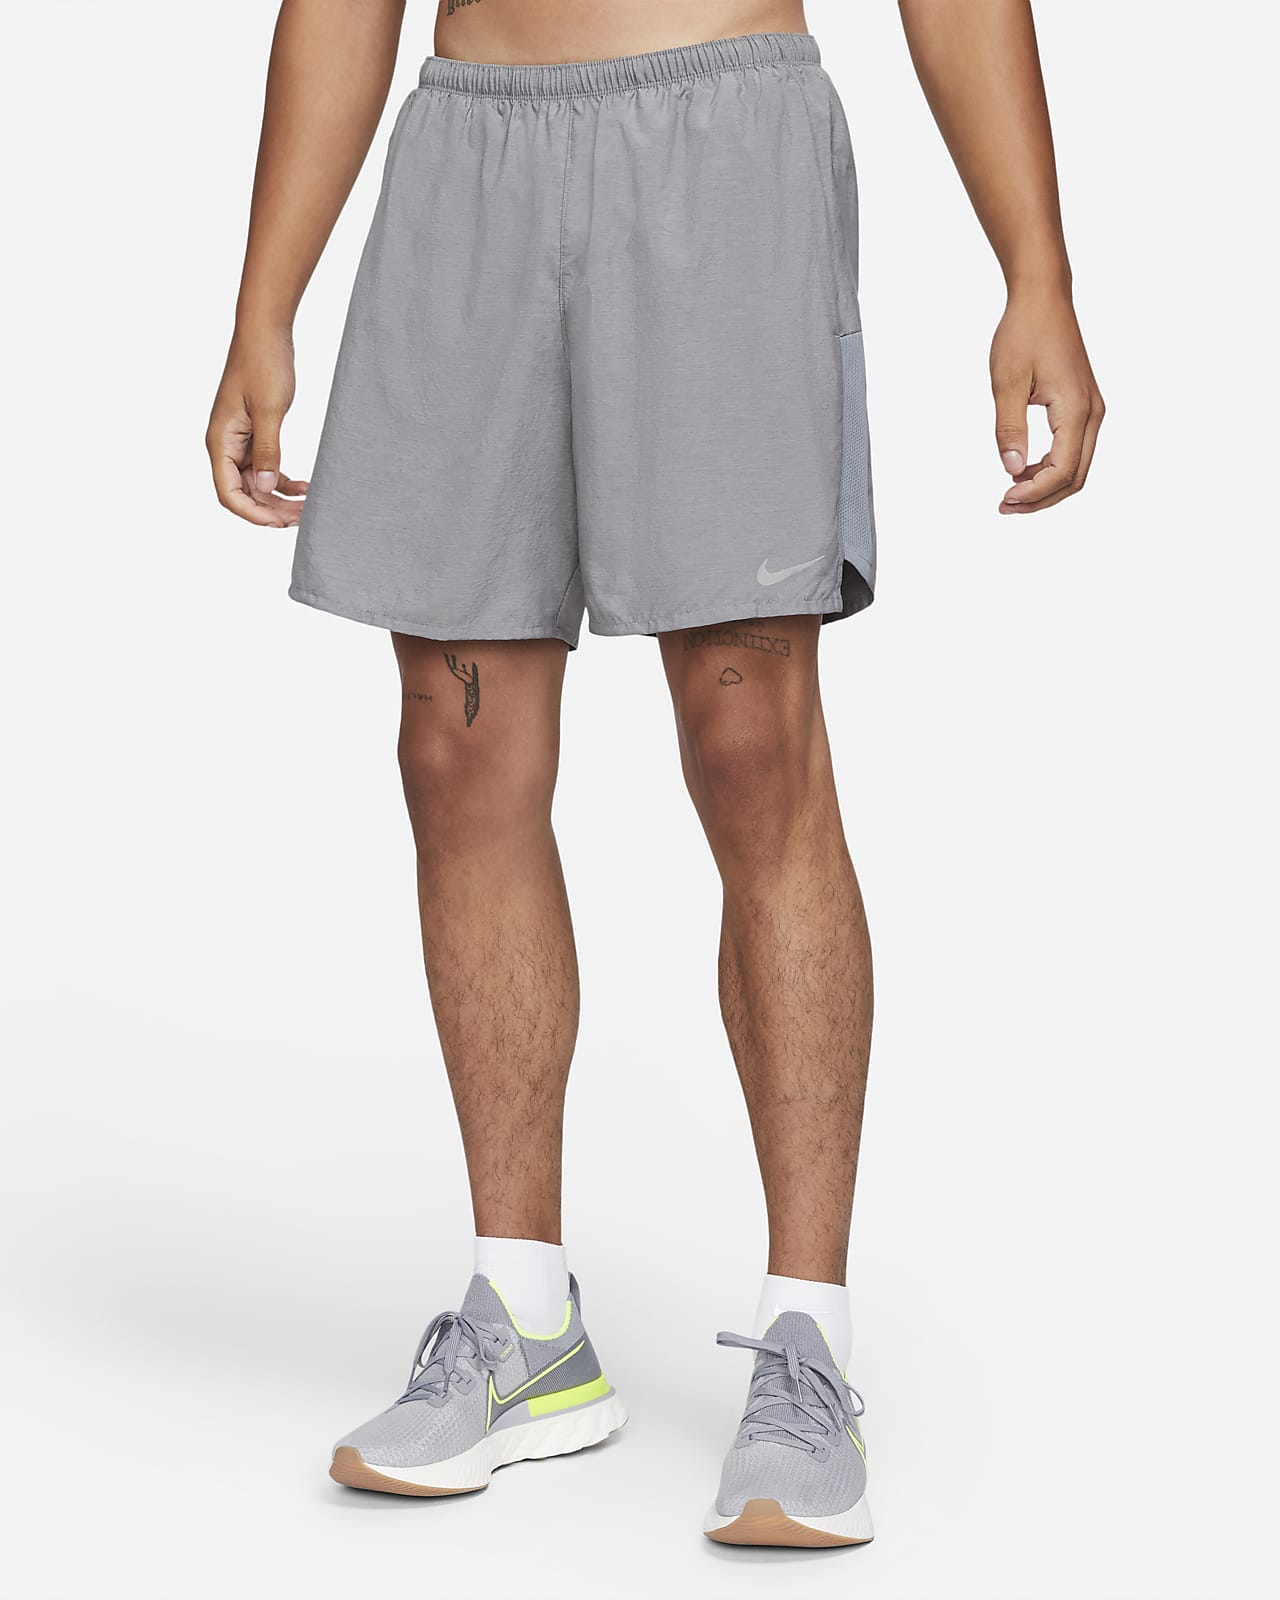 Uitverkoop Zuiver Raap bladeren op Nike Challenger Men's 7" Brief-Lined Running Shorts. Nike.com